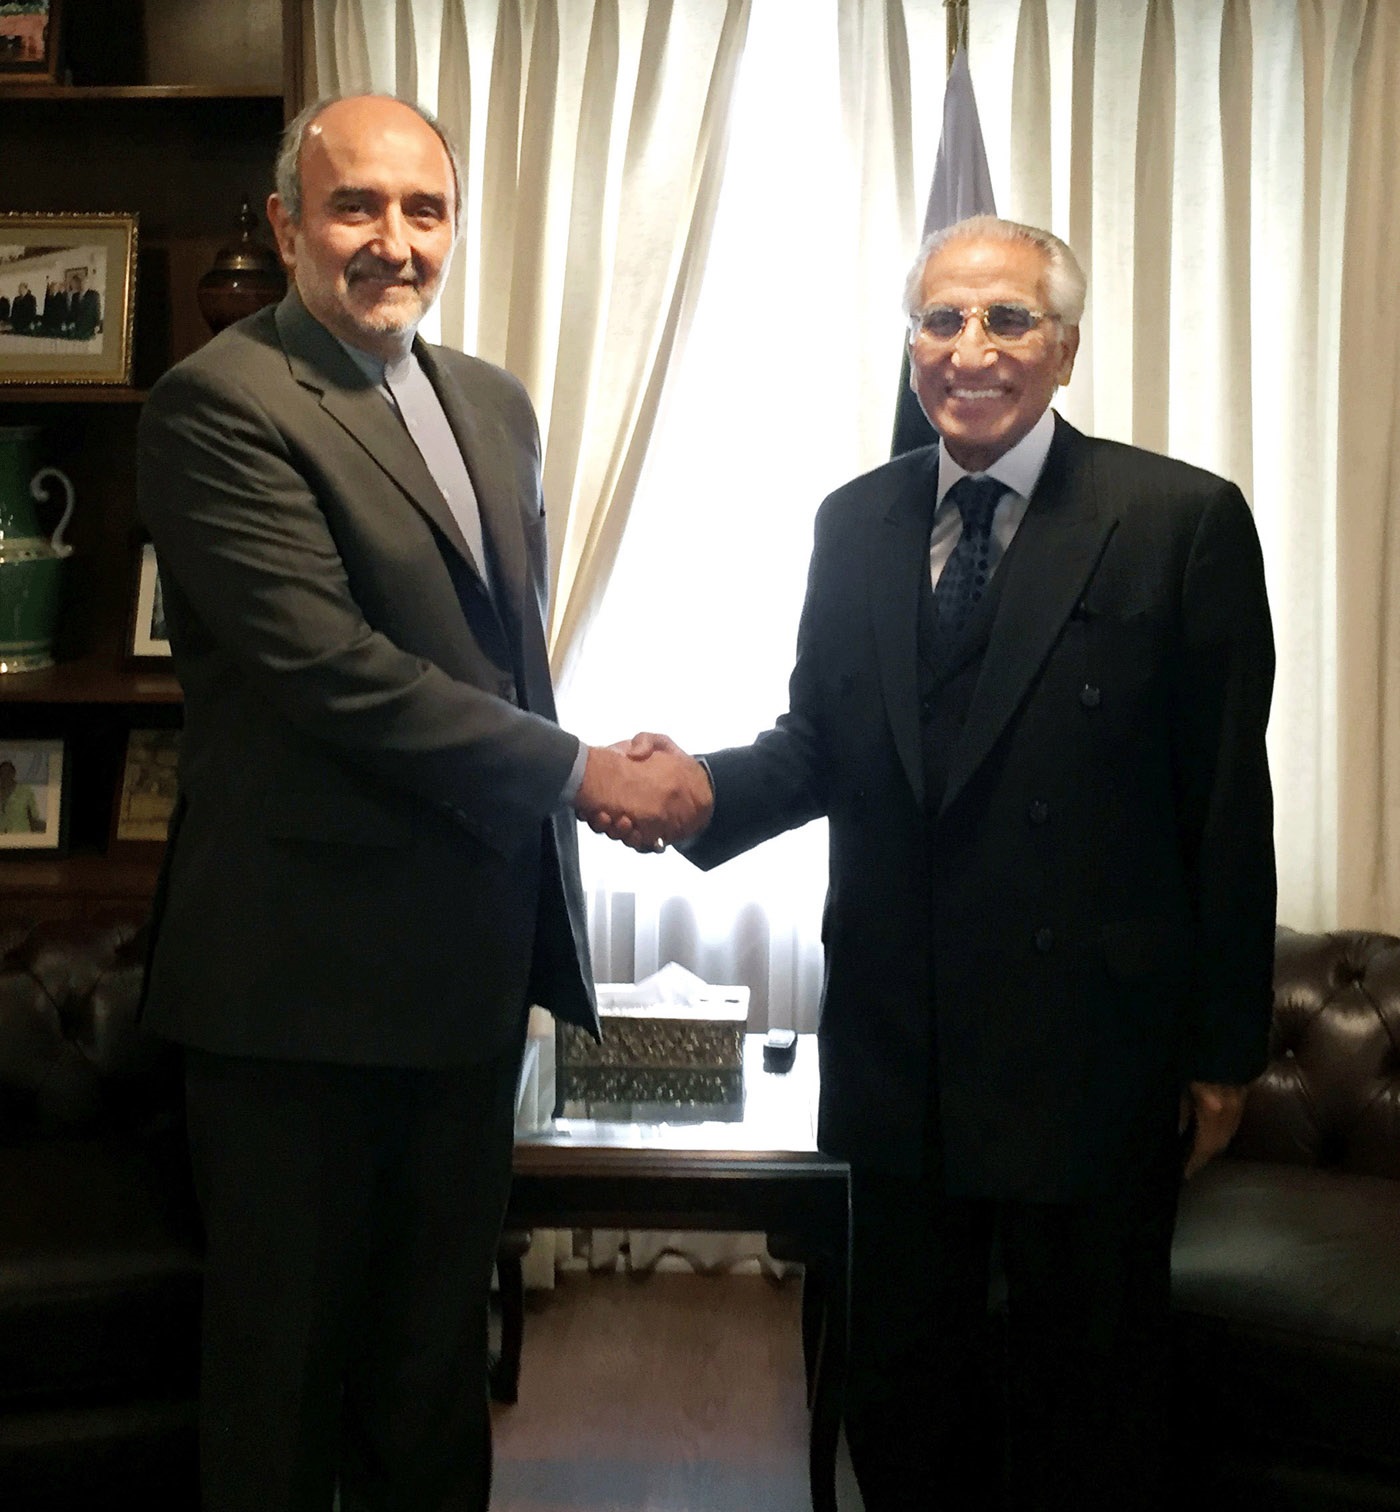 طارق فاطمی سے ایرانی سفیر کی ملاقات ،باہمی دلچسپی کے امور پر تبادلہ خیال